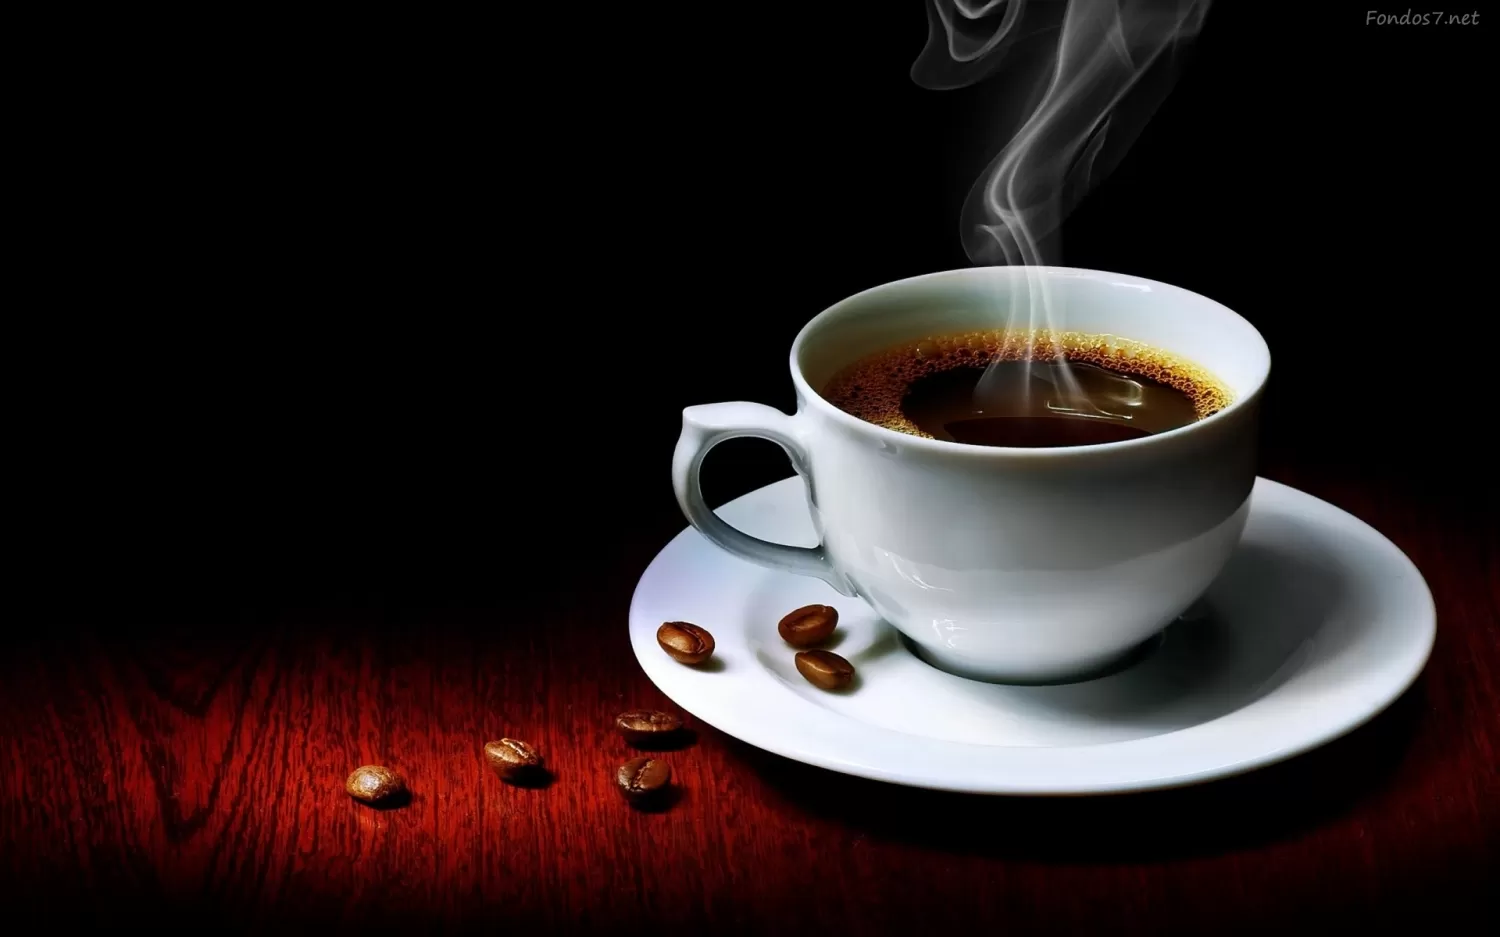 Empresarios advirtieron que podría faltar café en Argentina por el cupo en dólares para importar